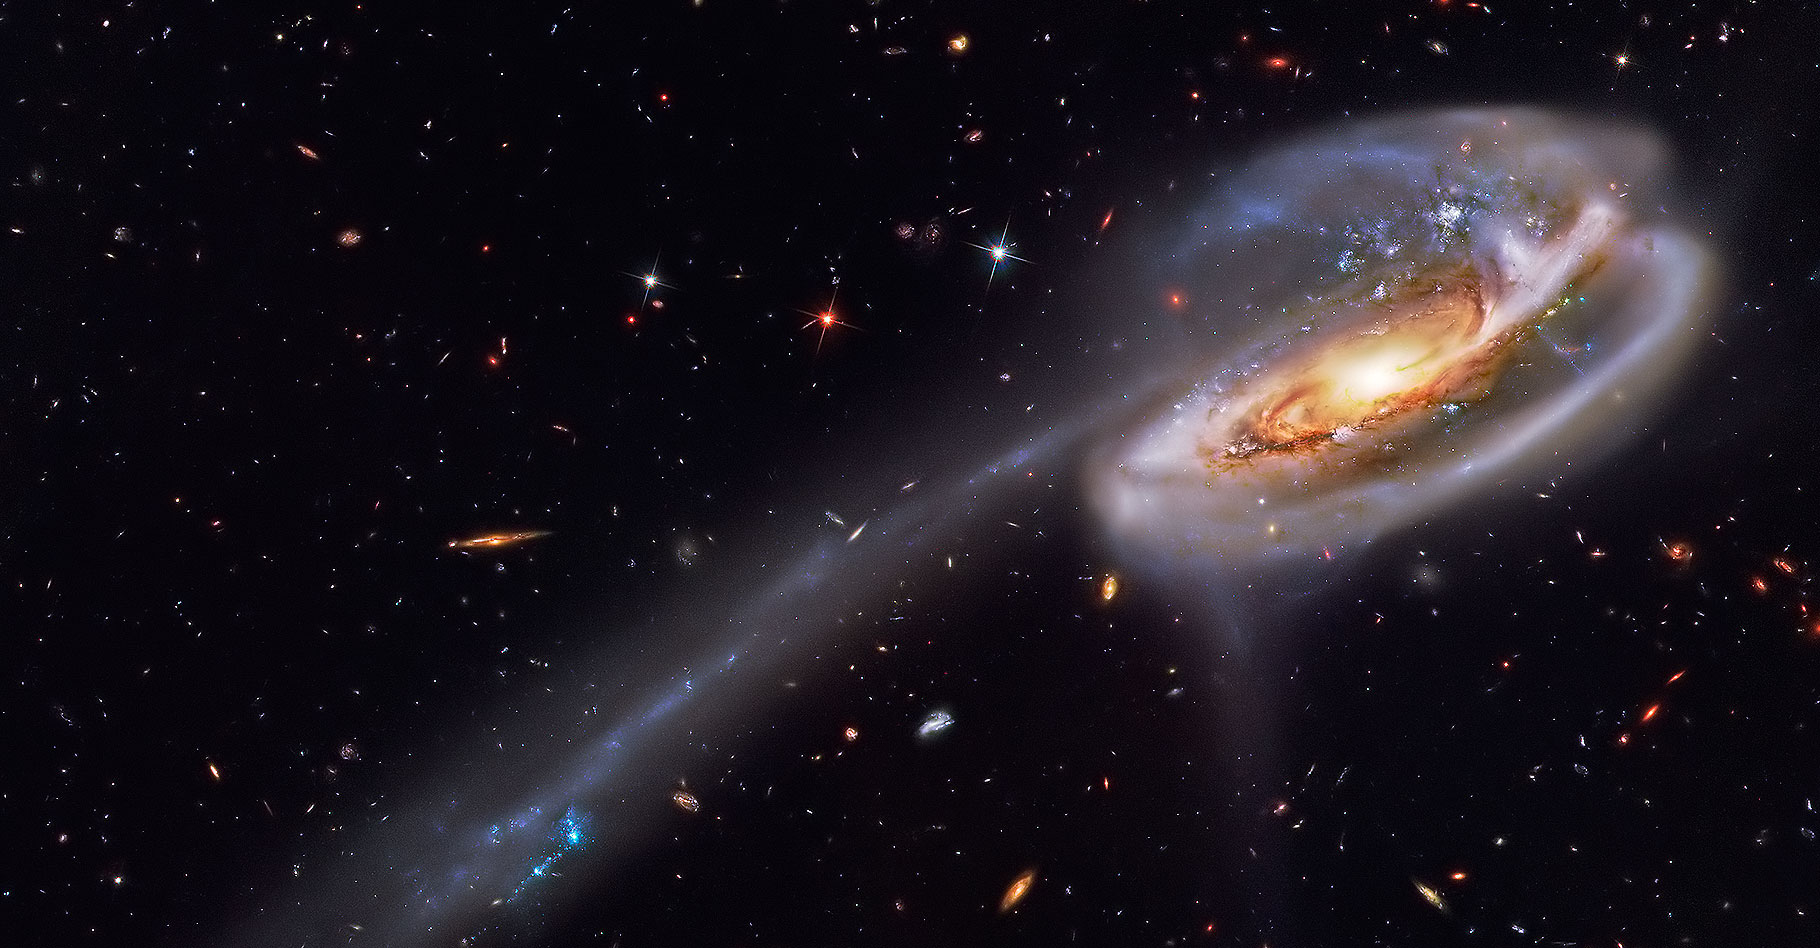 La naissance des étoiles. © Hubble Legacy Archive, ESA, NASA
